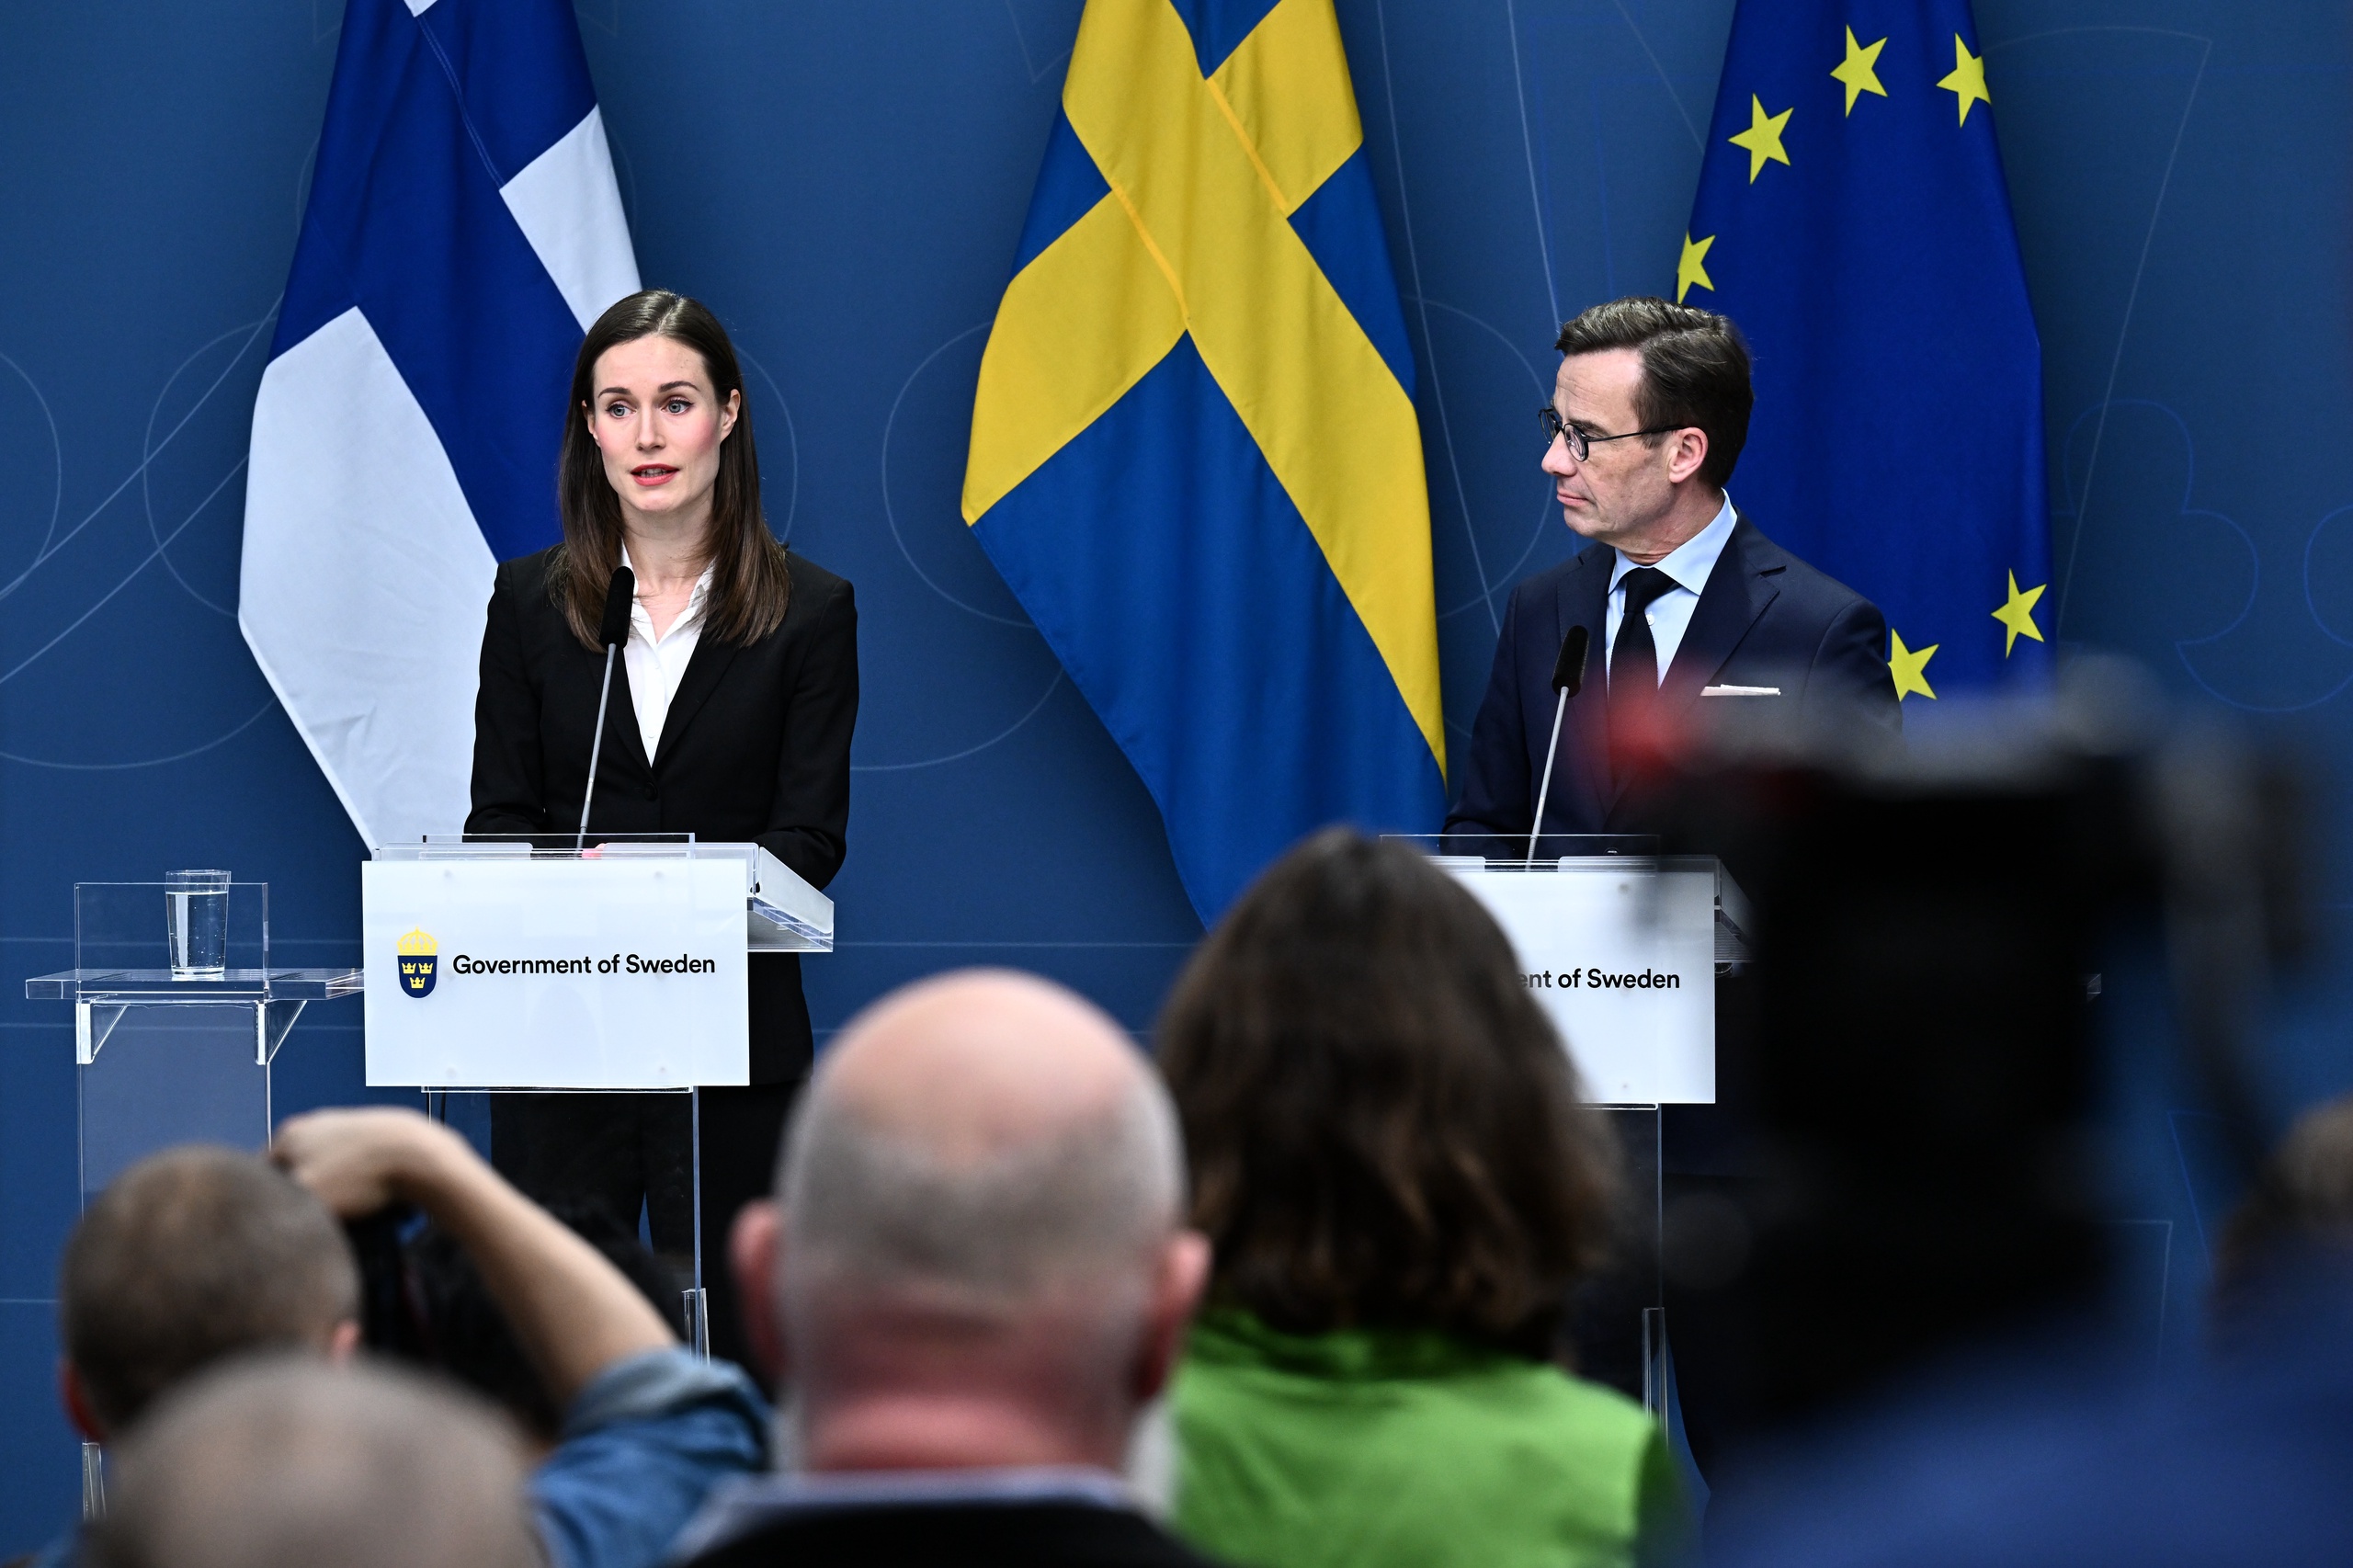 Finland en Zweden blijven verenigd in hun aanvraag voor het NAVO-lidmaatschap. Dat zeiden de Zweedse premier Ulf Kristersson en zijn Finse ambtgenoot Sanna Marin op een gezamenlijke persconferentie in Stockholm.